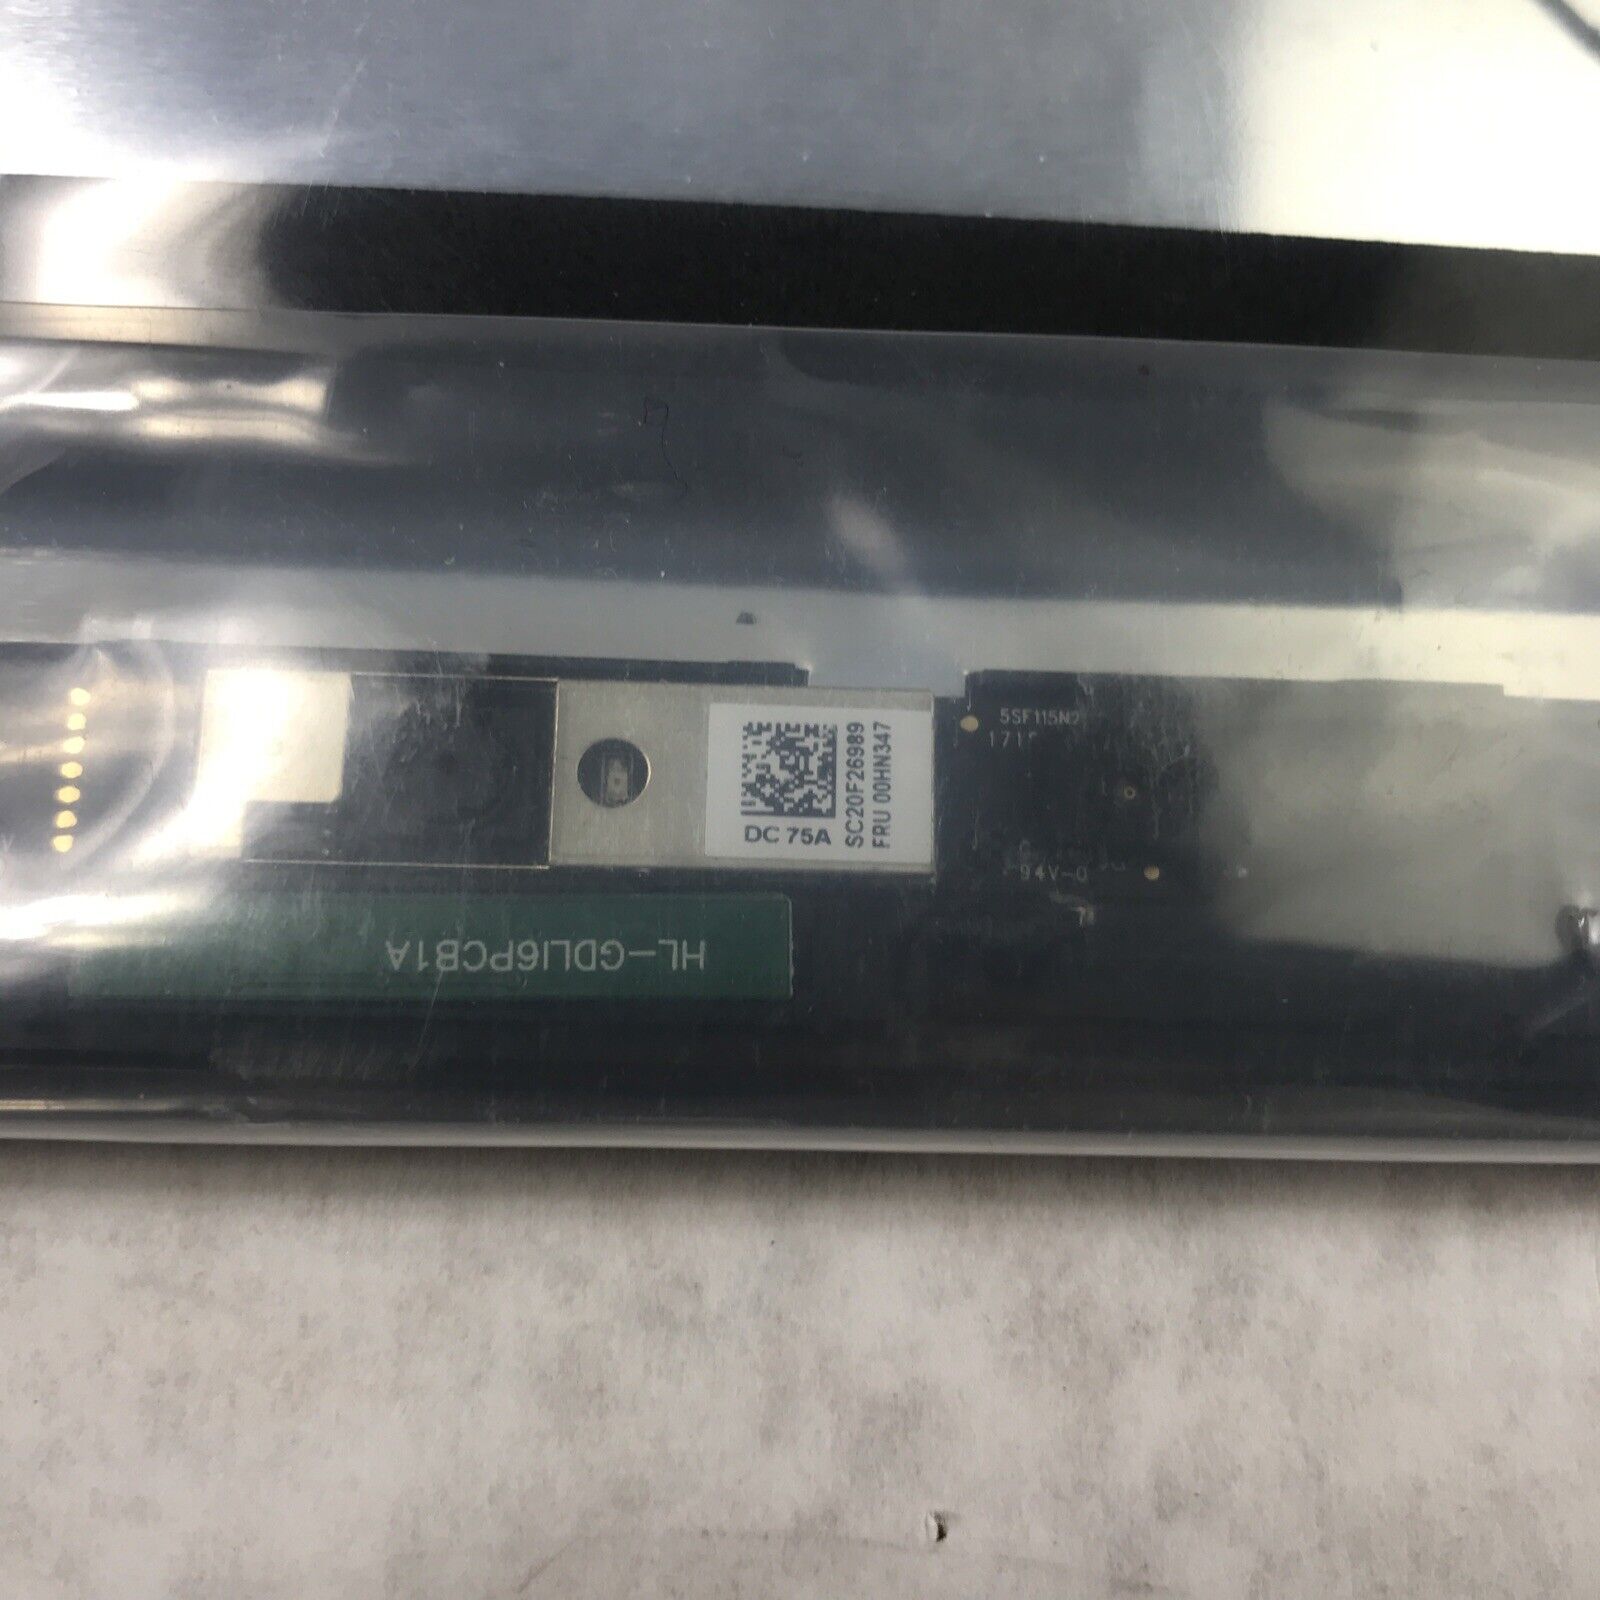 (Lot of 12) Lenovo BAC-SNG-10354 LCD Back Cover B-Grade Model 11E